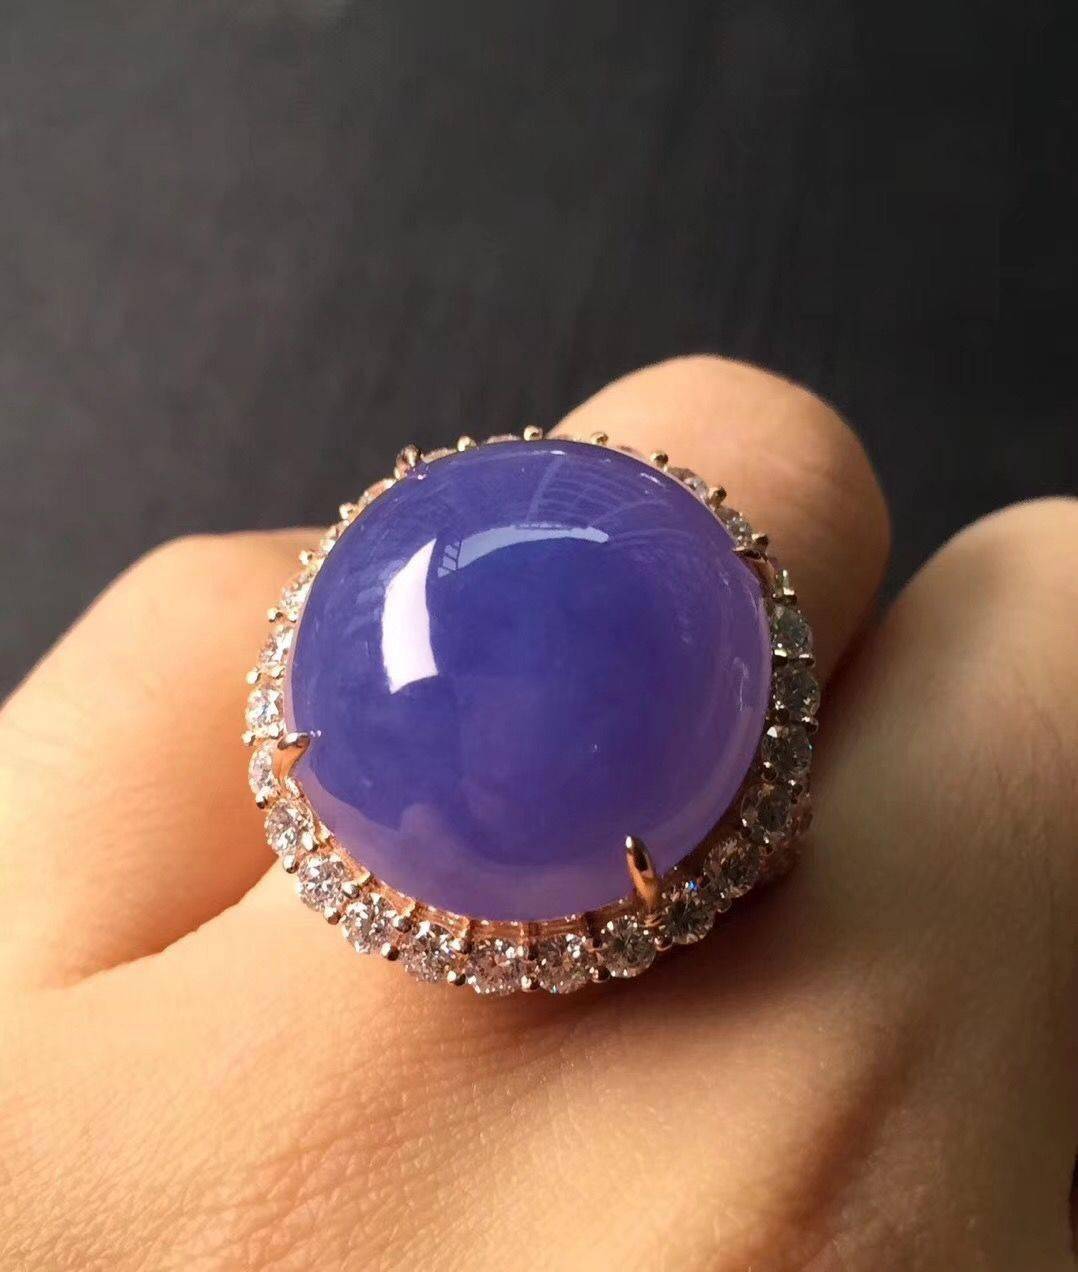 为1000元押注买下的翡翠原石,竟是稀世罕见帝王紫,完美暴涨!